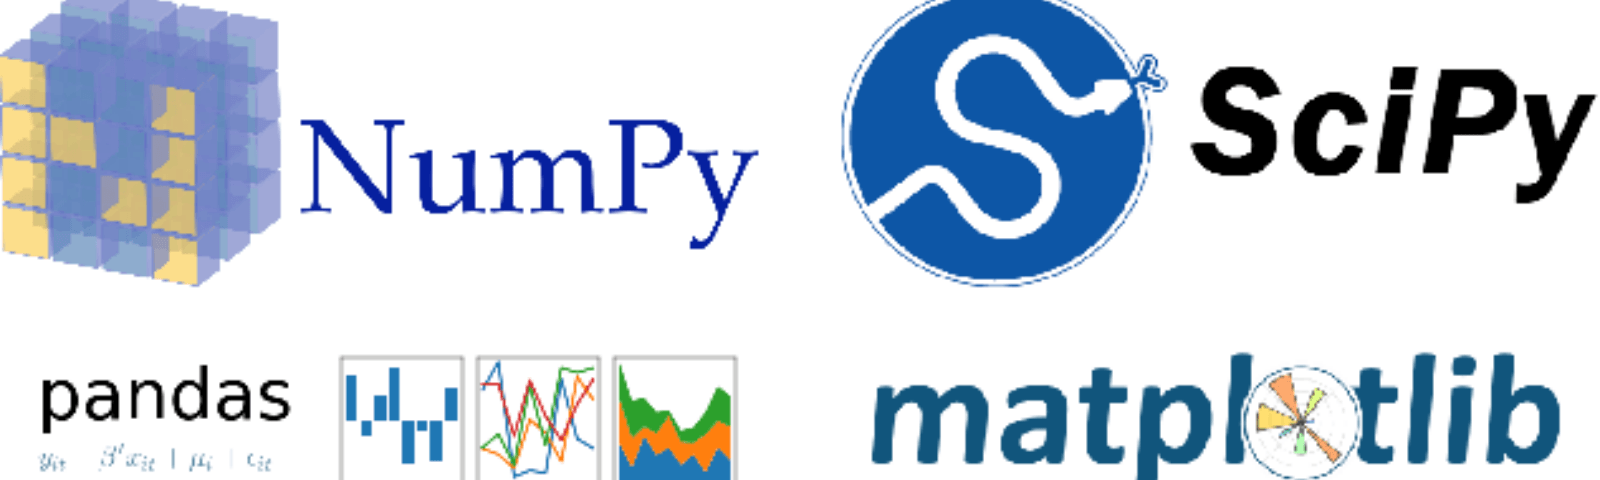 Numpy Logo - Scipy – Towards Data Science